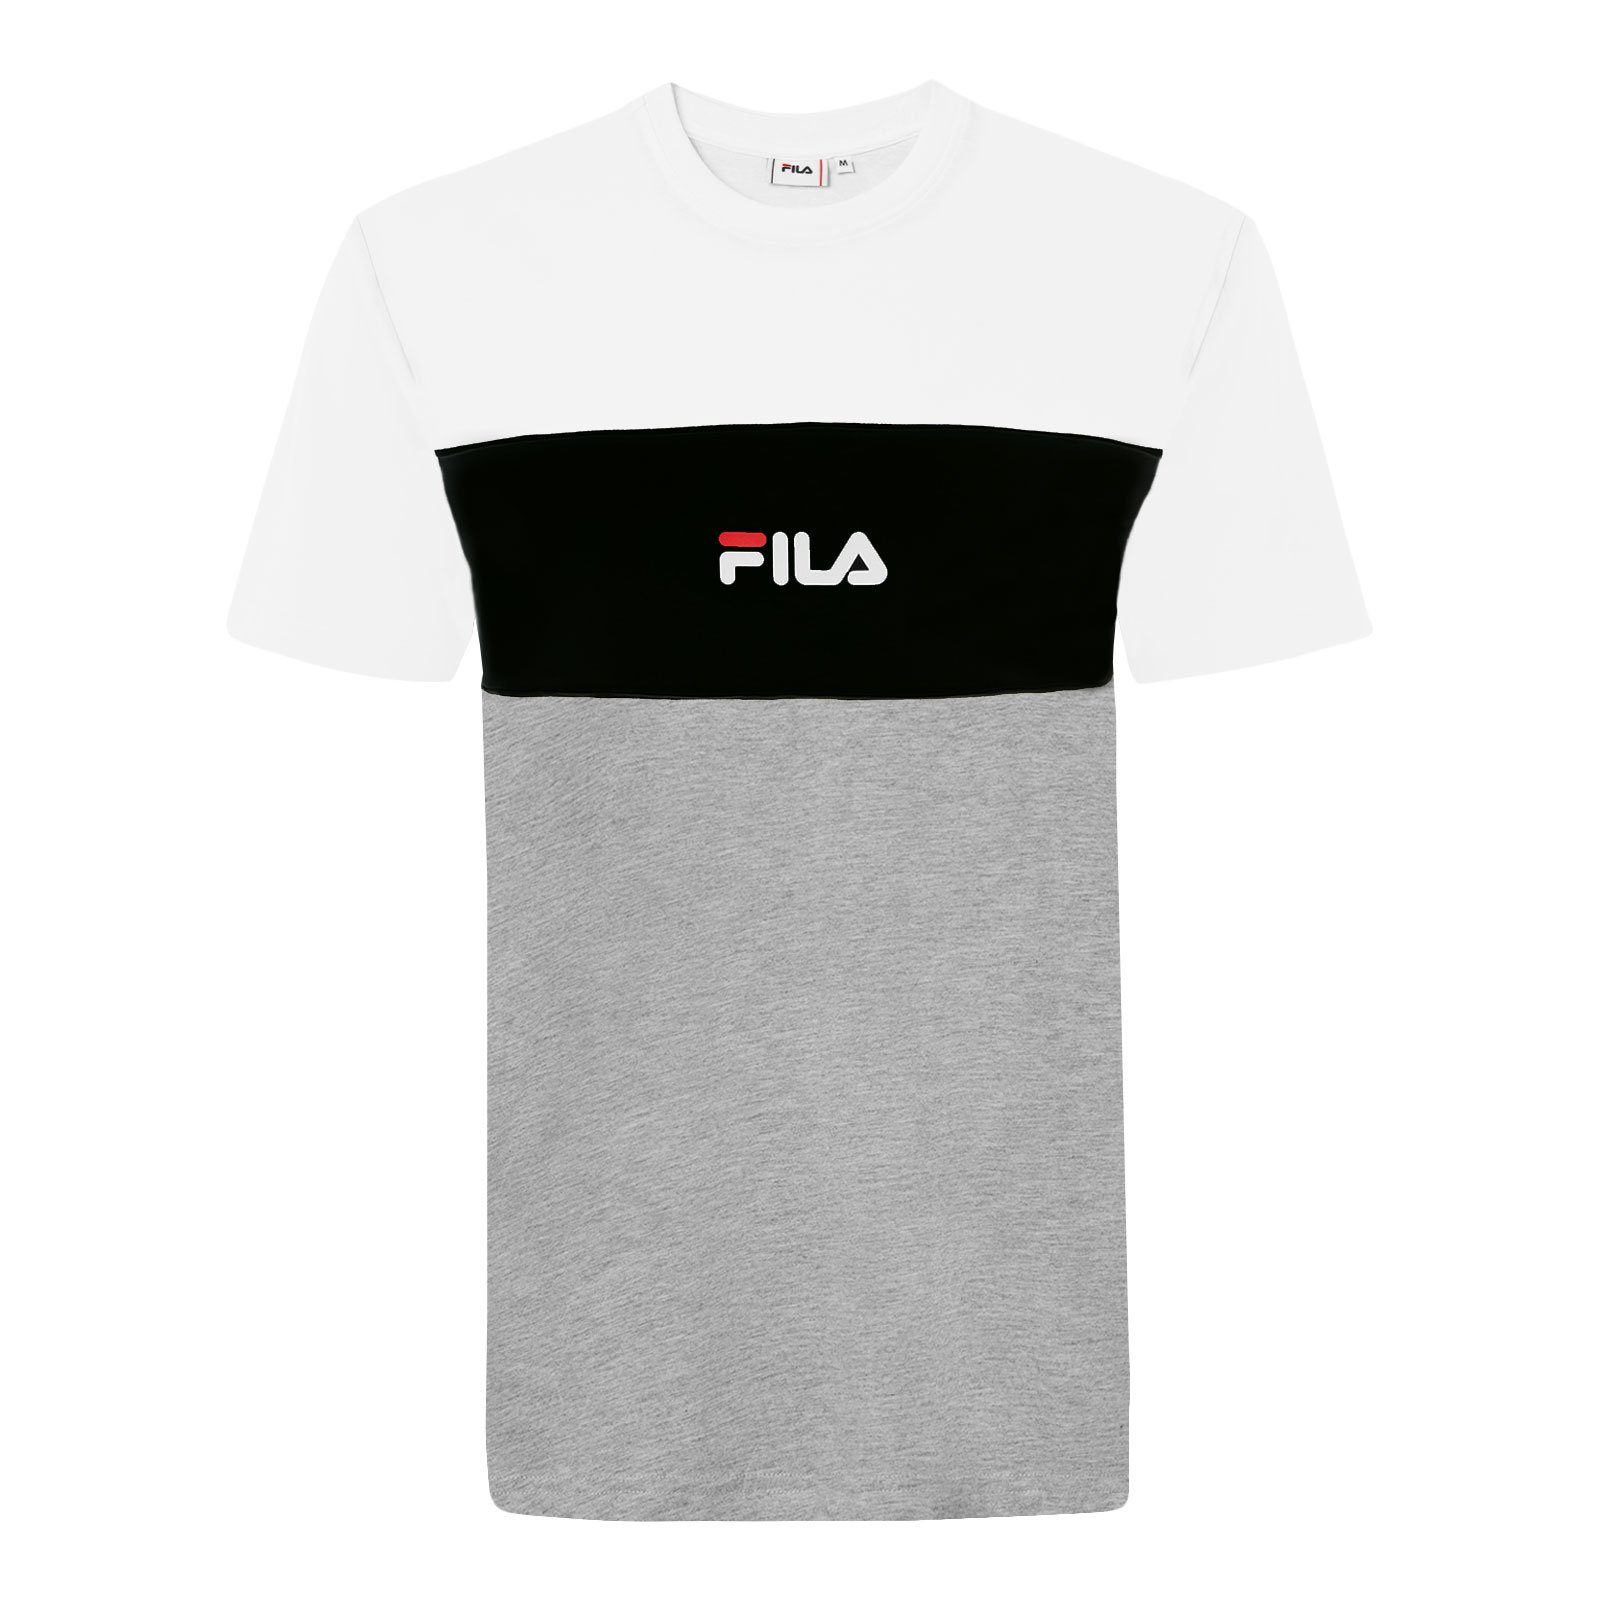 Fila T-Shirt Men Anoki Blocked Tee mit Markenschriftzug A495 light grey melange bros / bright white / black